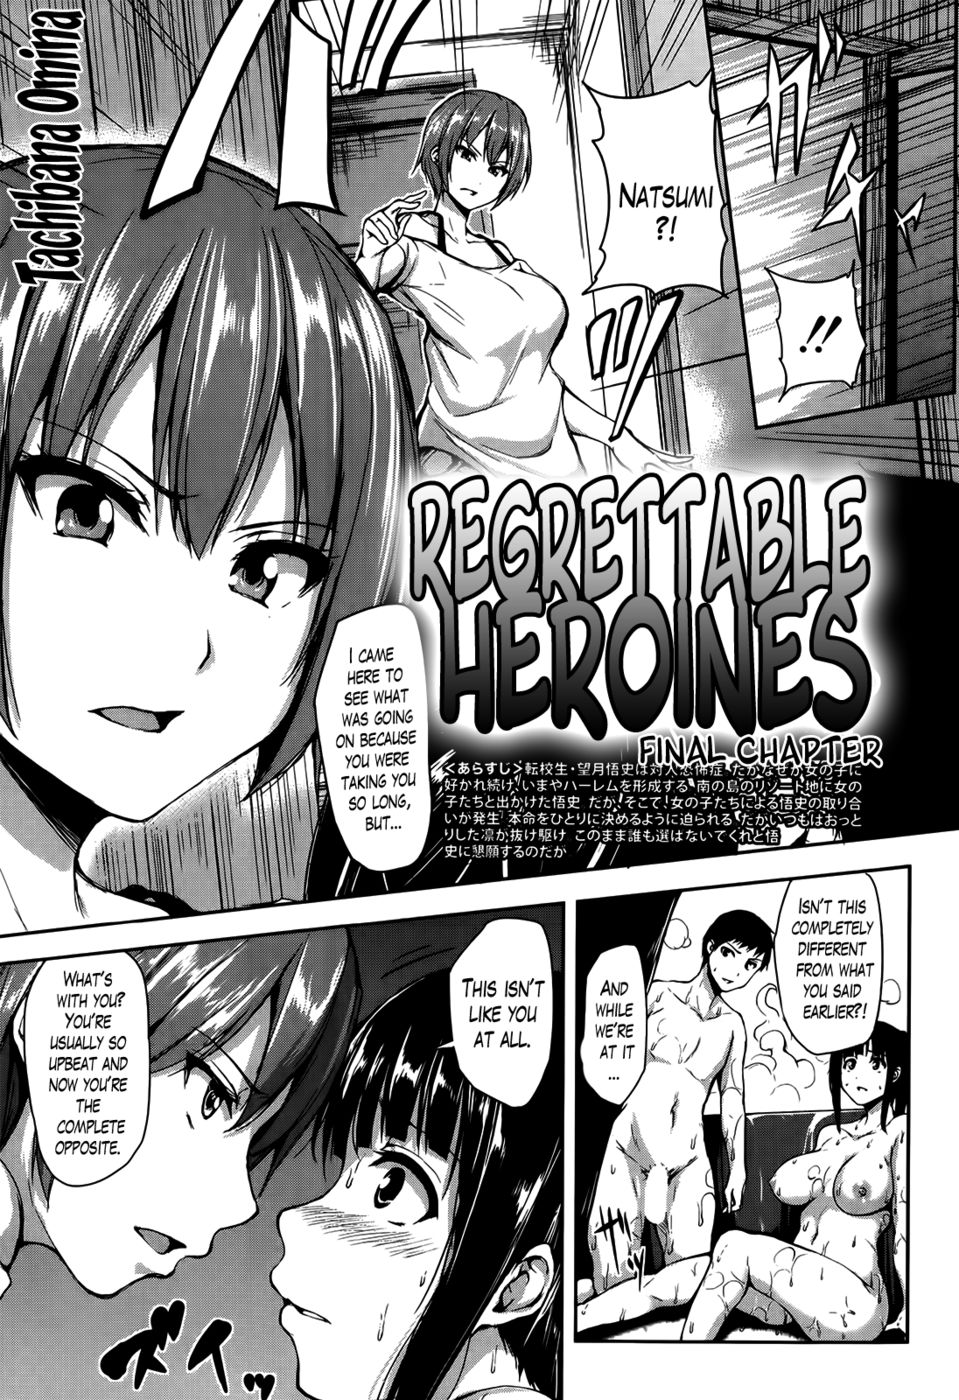 Hentai Manga Comic-Regrettable Heroines-Chapter 6-1